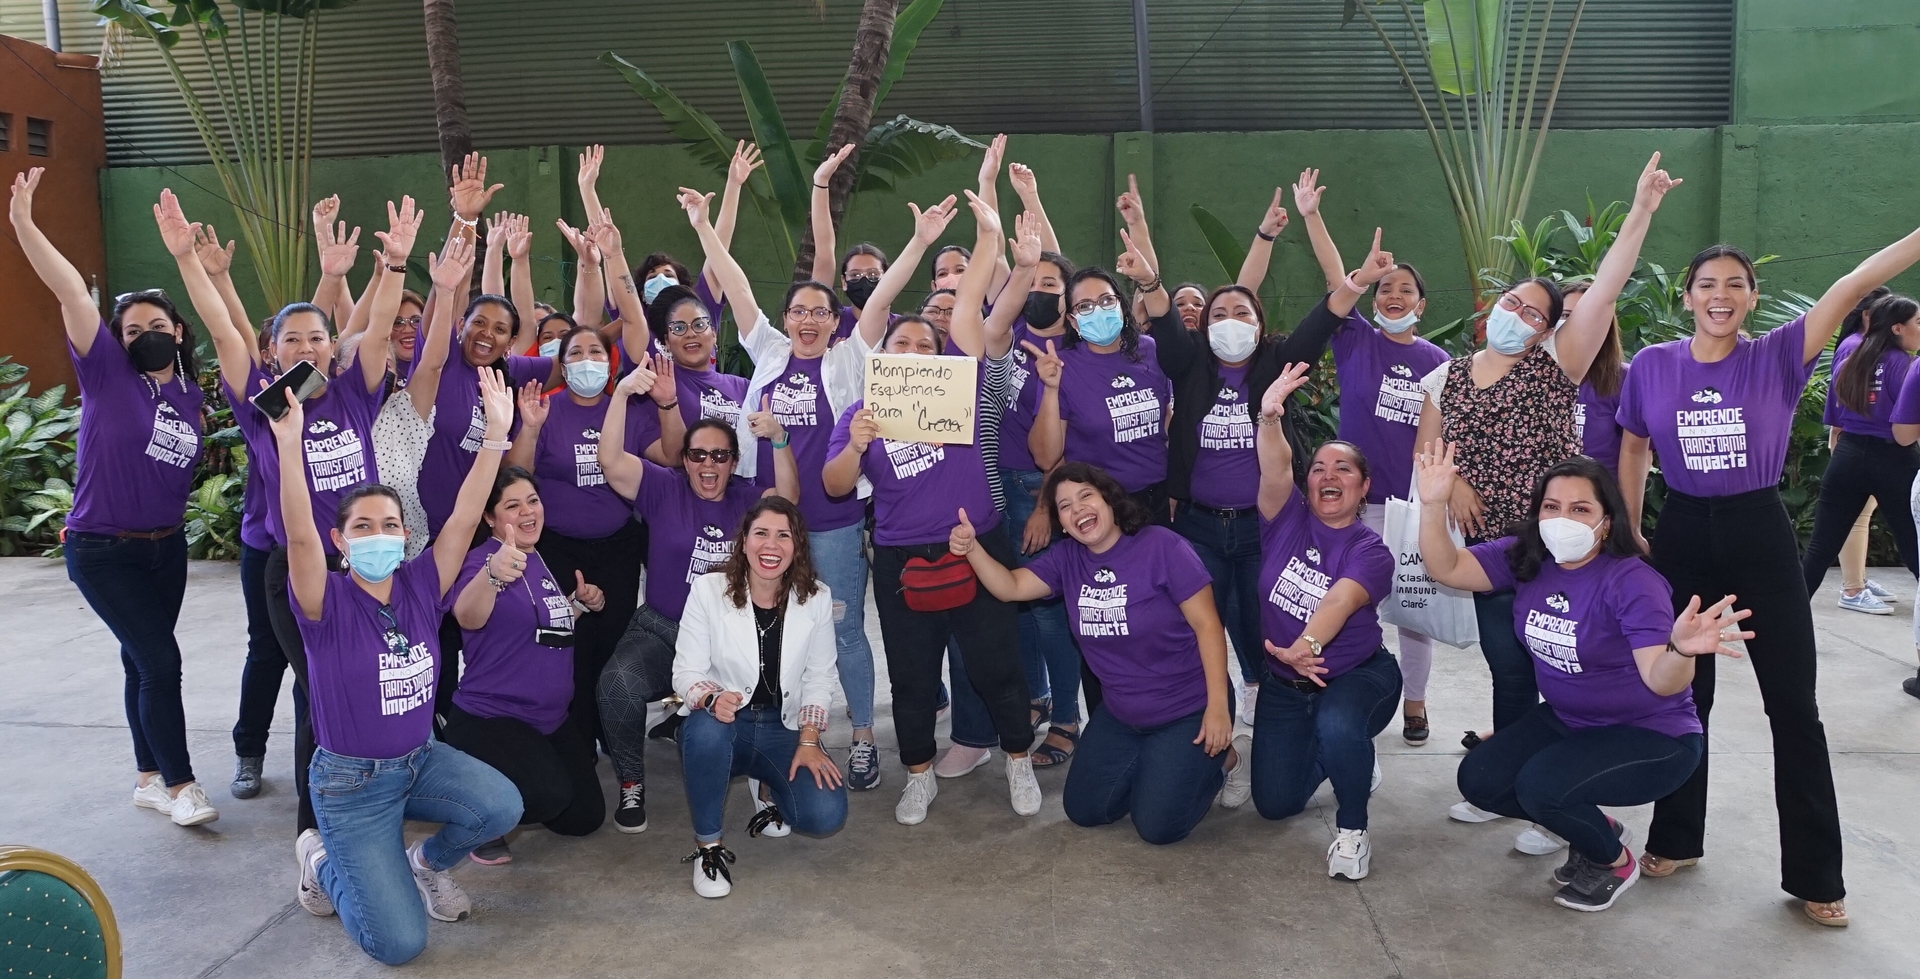 El “Bootcamp Empresarias Disruptivas” utilizó la metodología de un día intensivo, práctico y vivencial para incidir en la instrucción de habilidades e implementación de herramientas que mejoran el mercado empresarial de Nicaragua, respondiendo a la desigualdad educativa y de género que enfrentan las mujeres en el mundo.